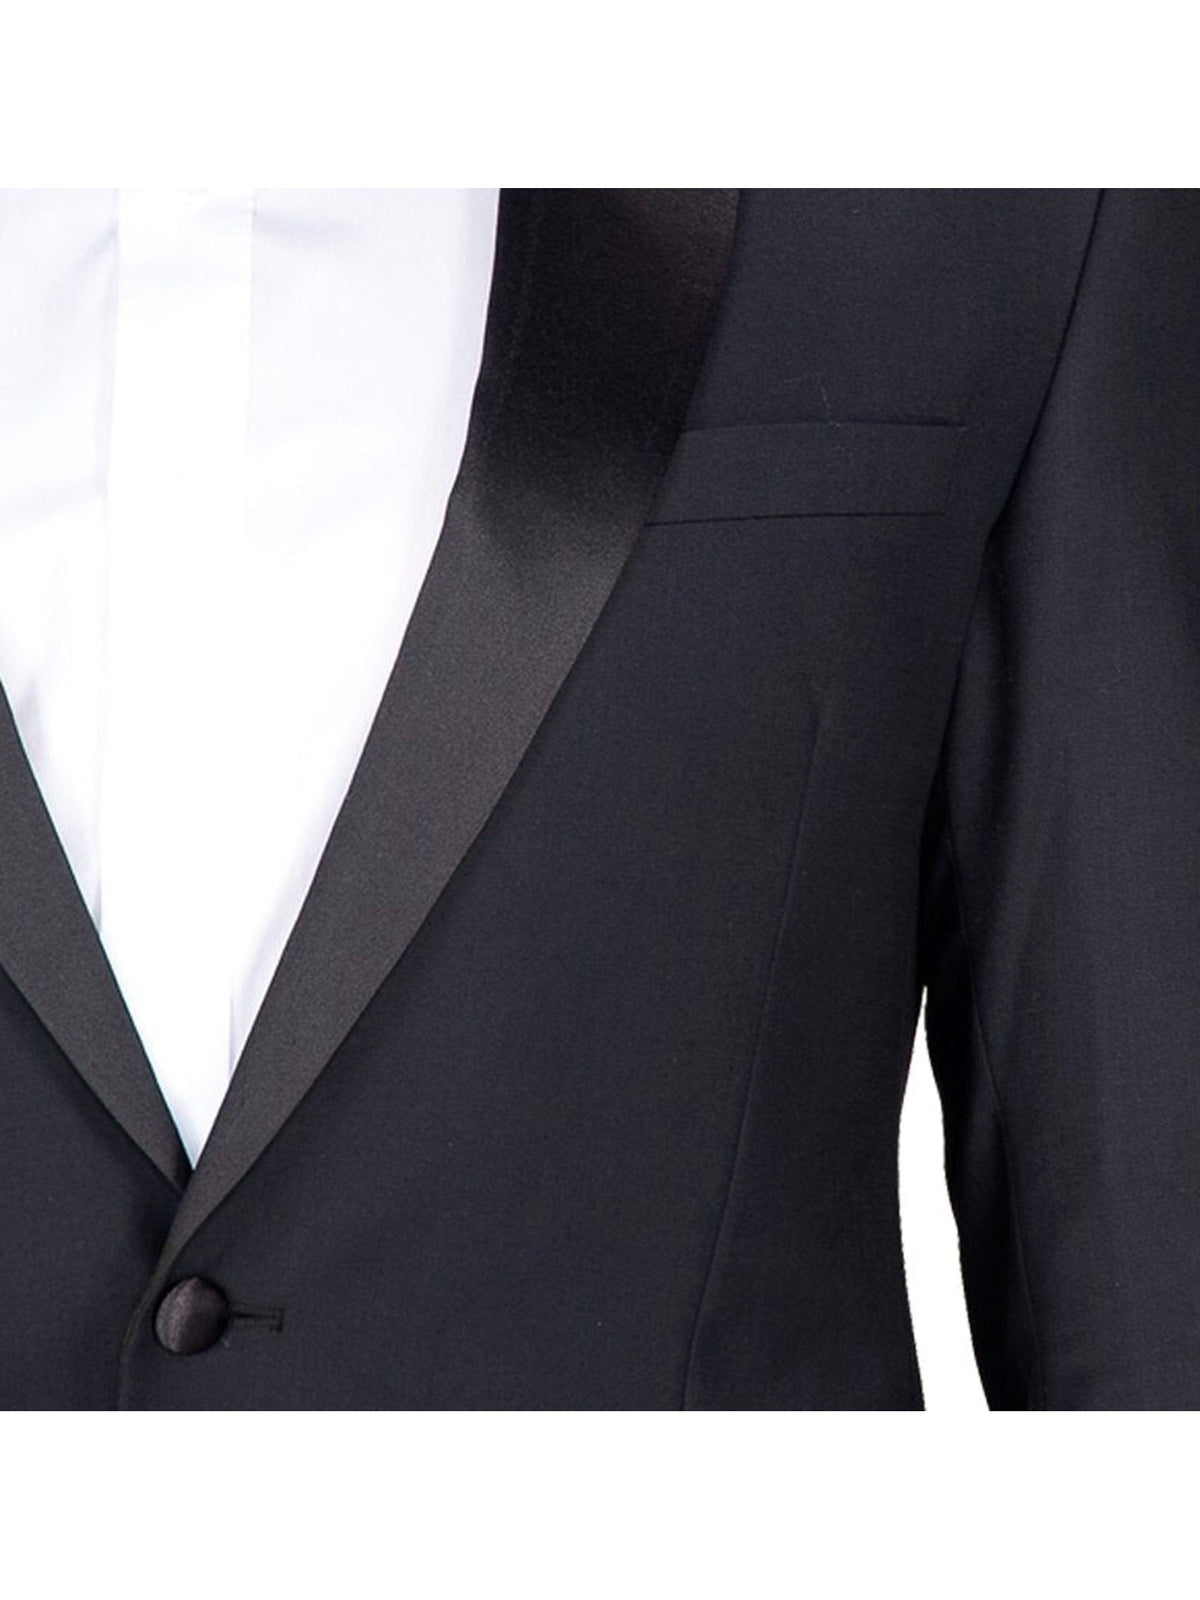 Braveman TUXEDOS Braveman Slim Fit Solid Black One Button Tuxedo Tux Suit With Peak Lapels